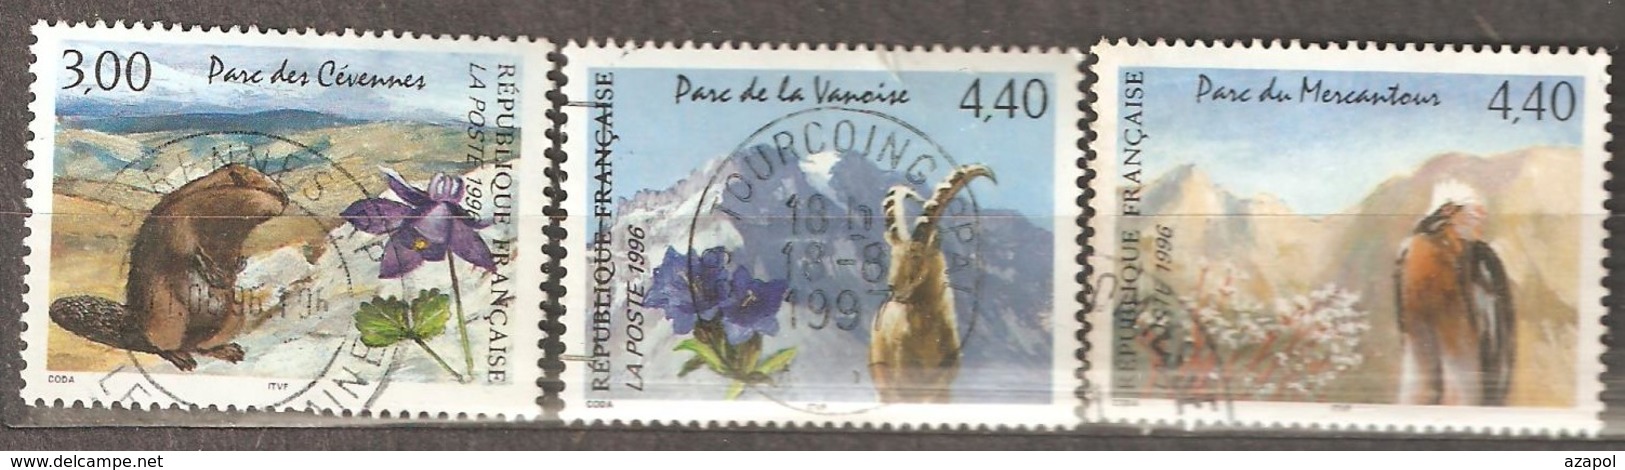 France: Full Set Of 3 Used Stamps, National Park, 1996, Mi#3145-3147 - Oblitérés